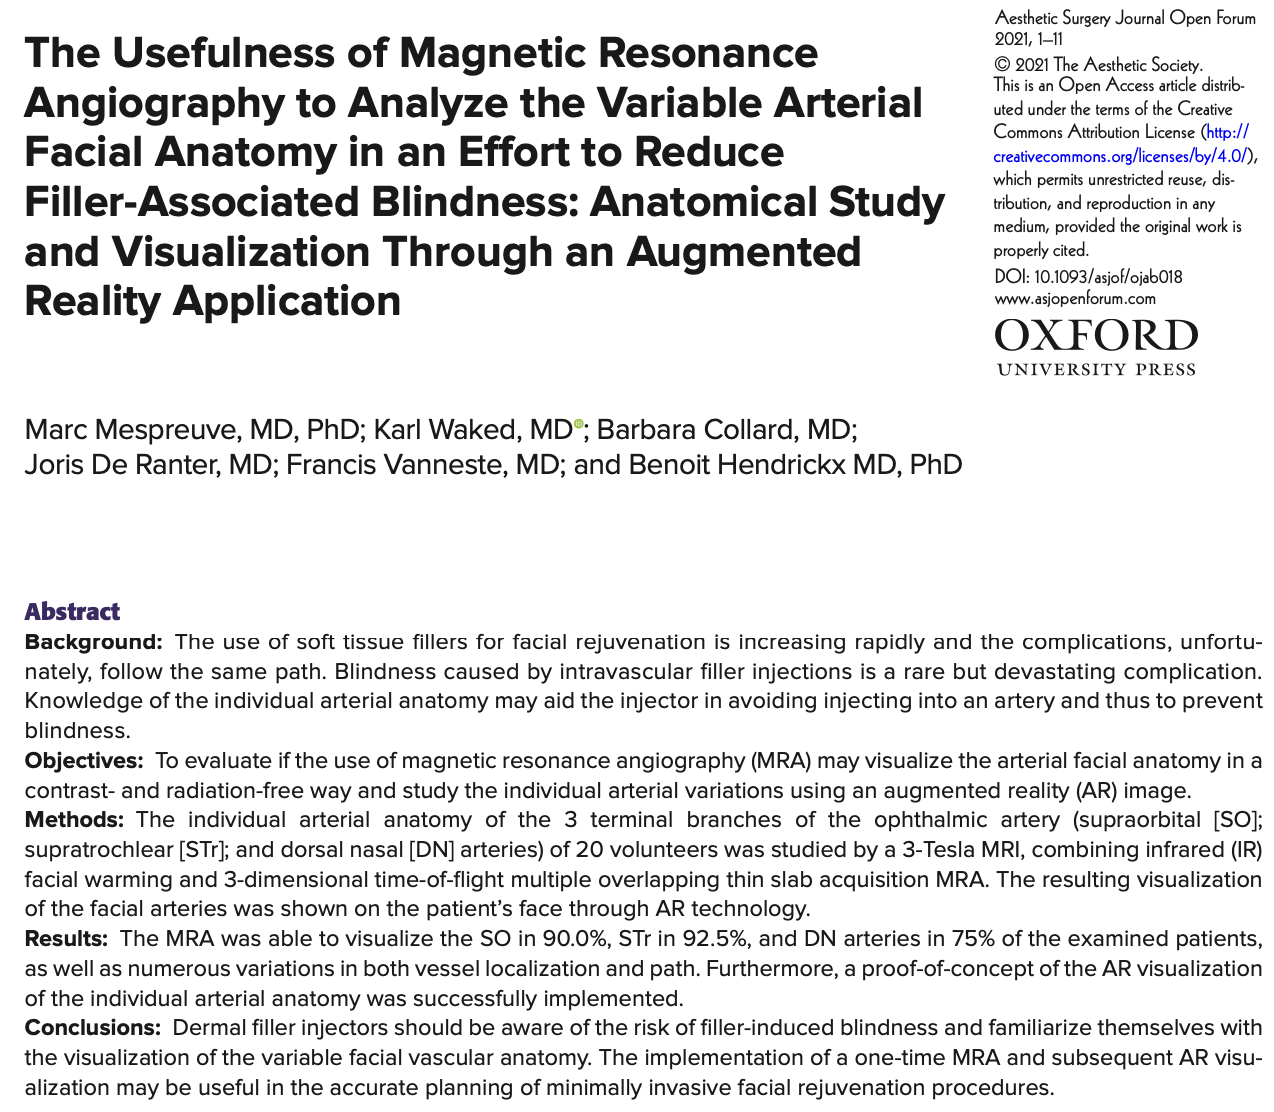 Magnetische Resonantie (MRI) om de arteriële anatomie van het aangezicht te visualiseren.